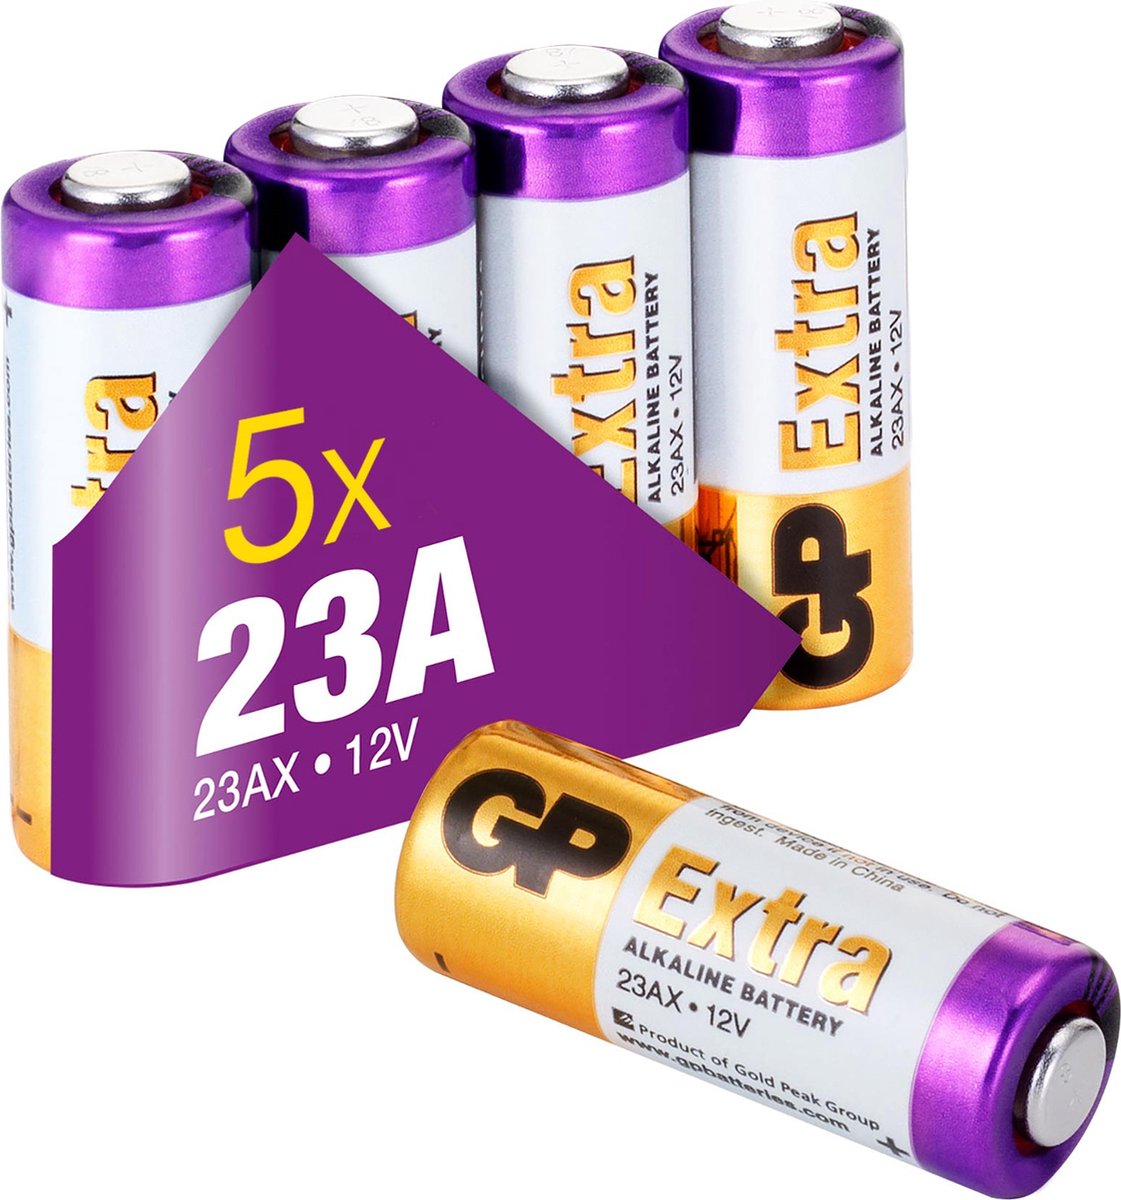 toonhoogte Geduld Vorming GP Extra Alkaline batterijen 23A batterij 12V A23 MN21 - 5 stuks -  Beschermd tegen lekken | bol.com